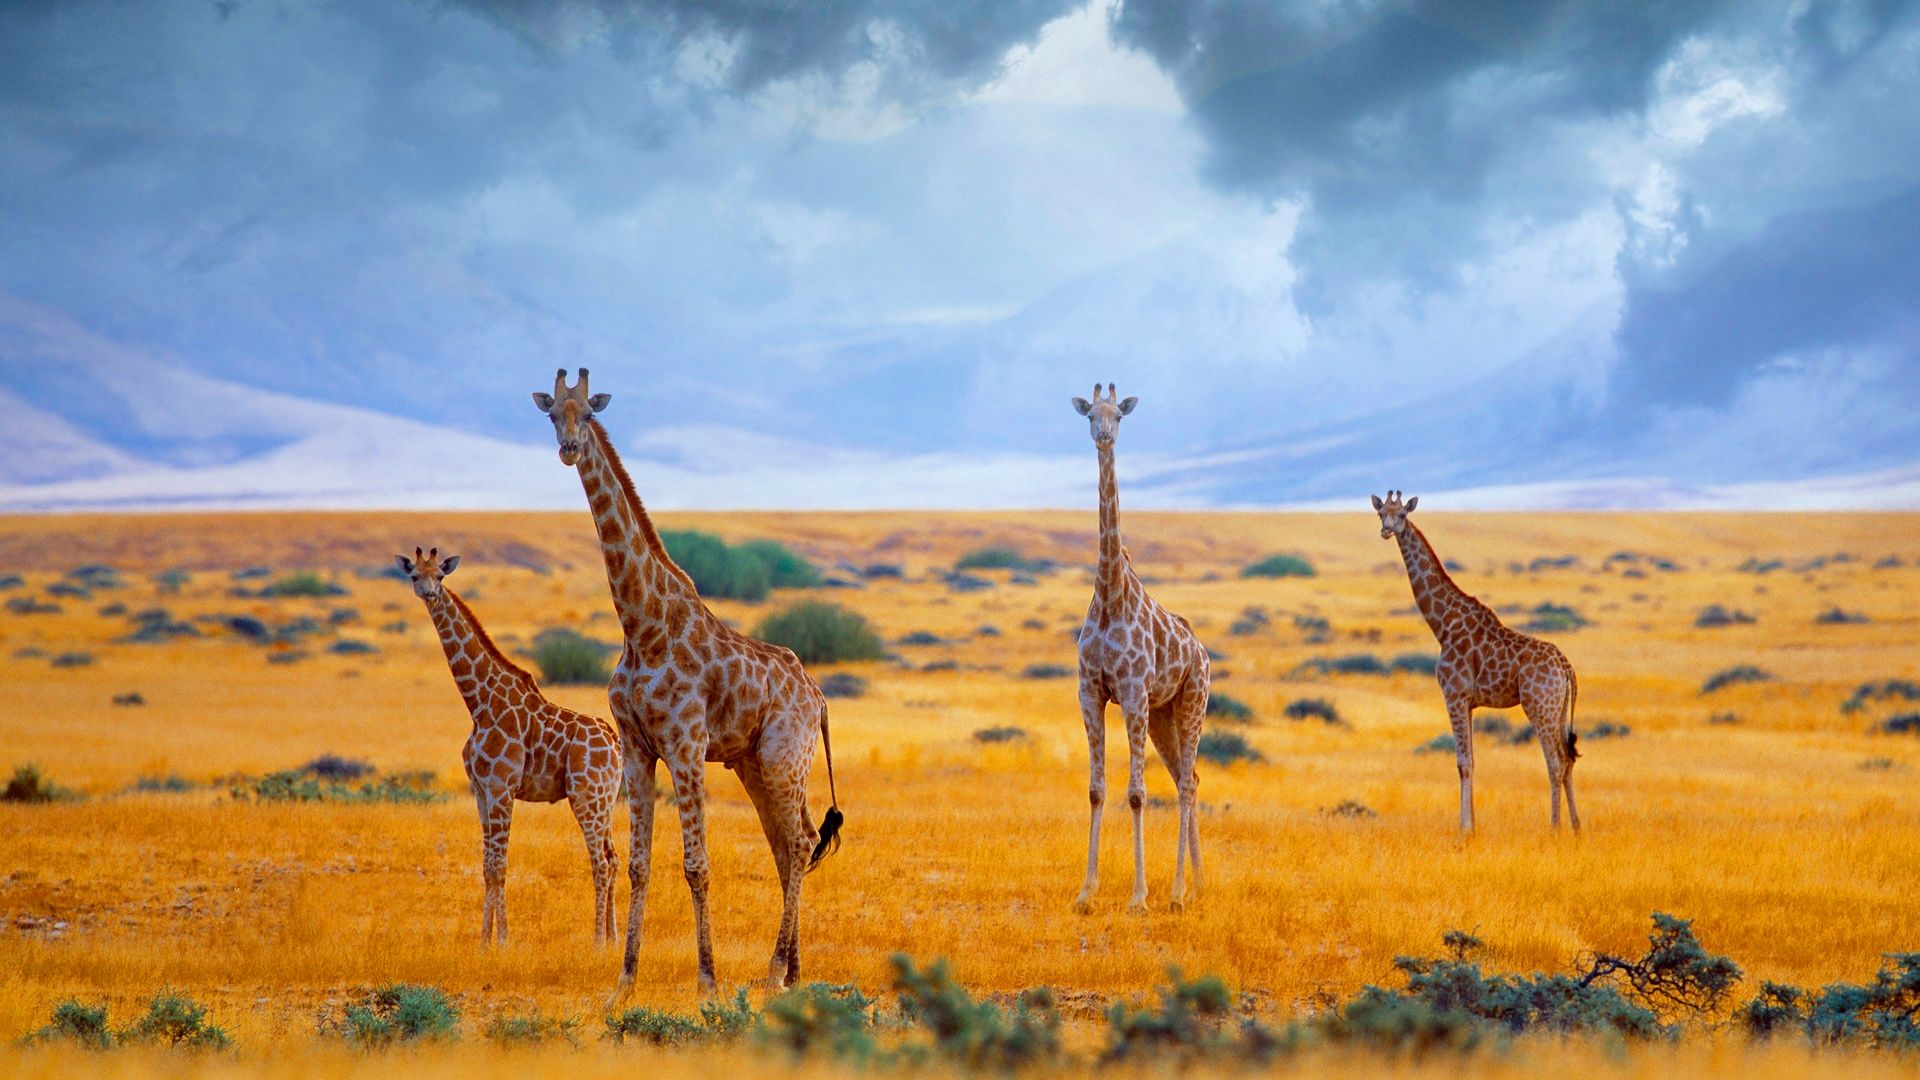 Giraffe In The Savanna 